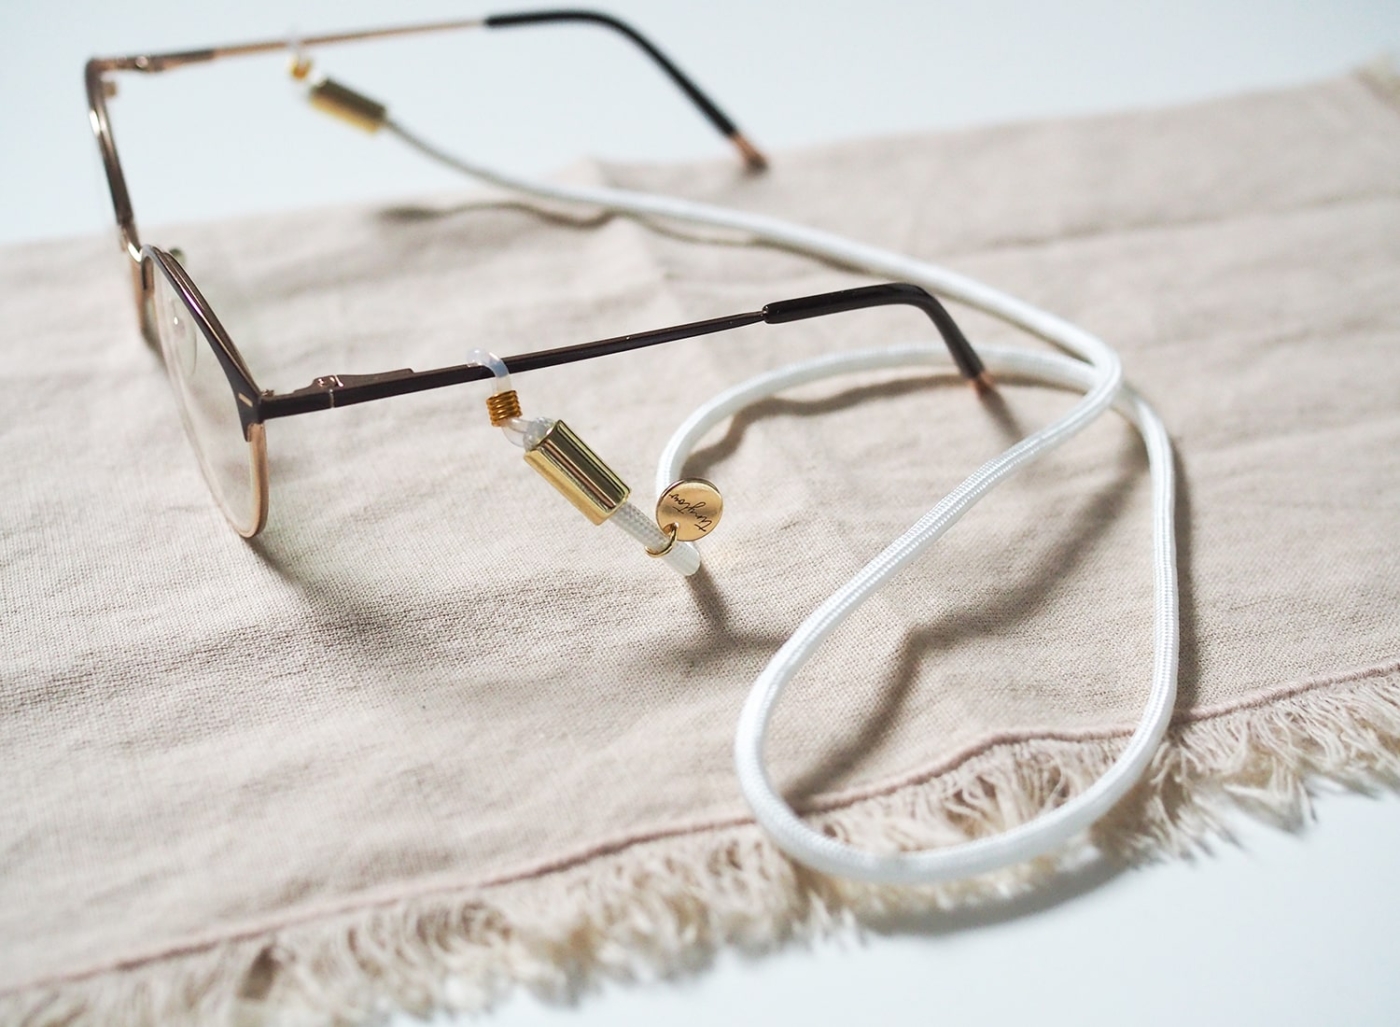 Brillenband in weiß mit goldenen Details an Alltagsbrille.